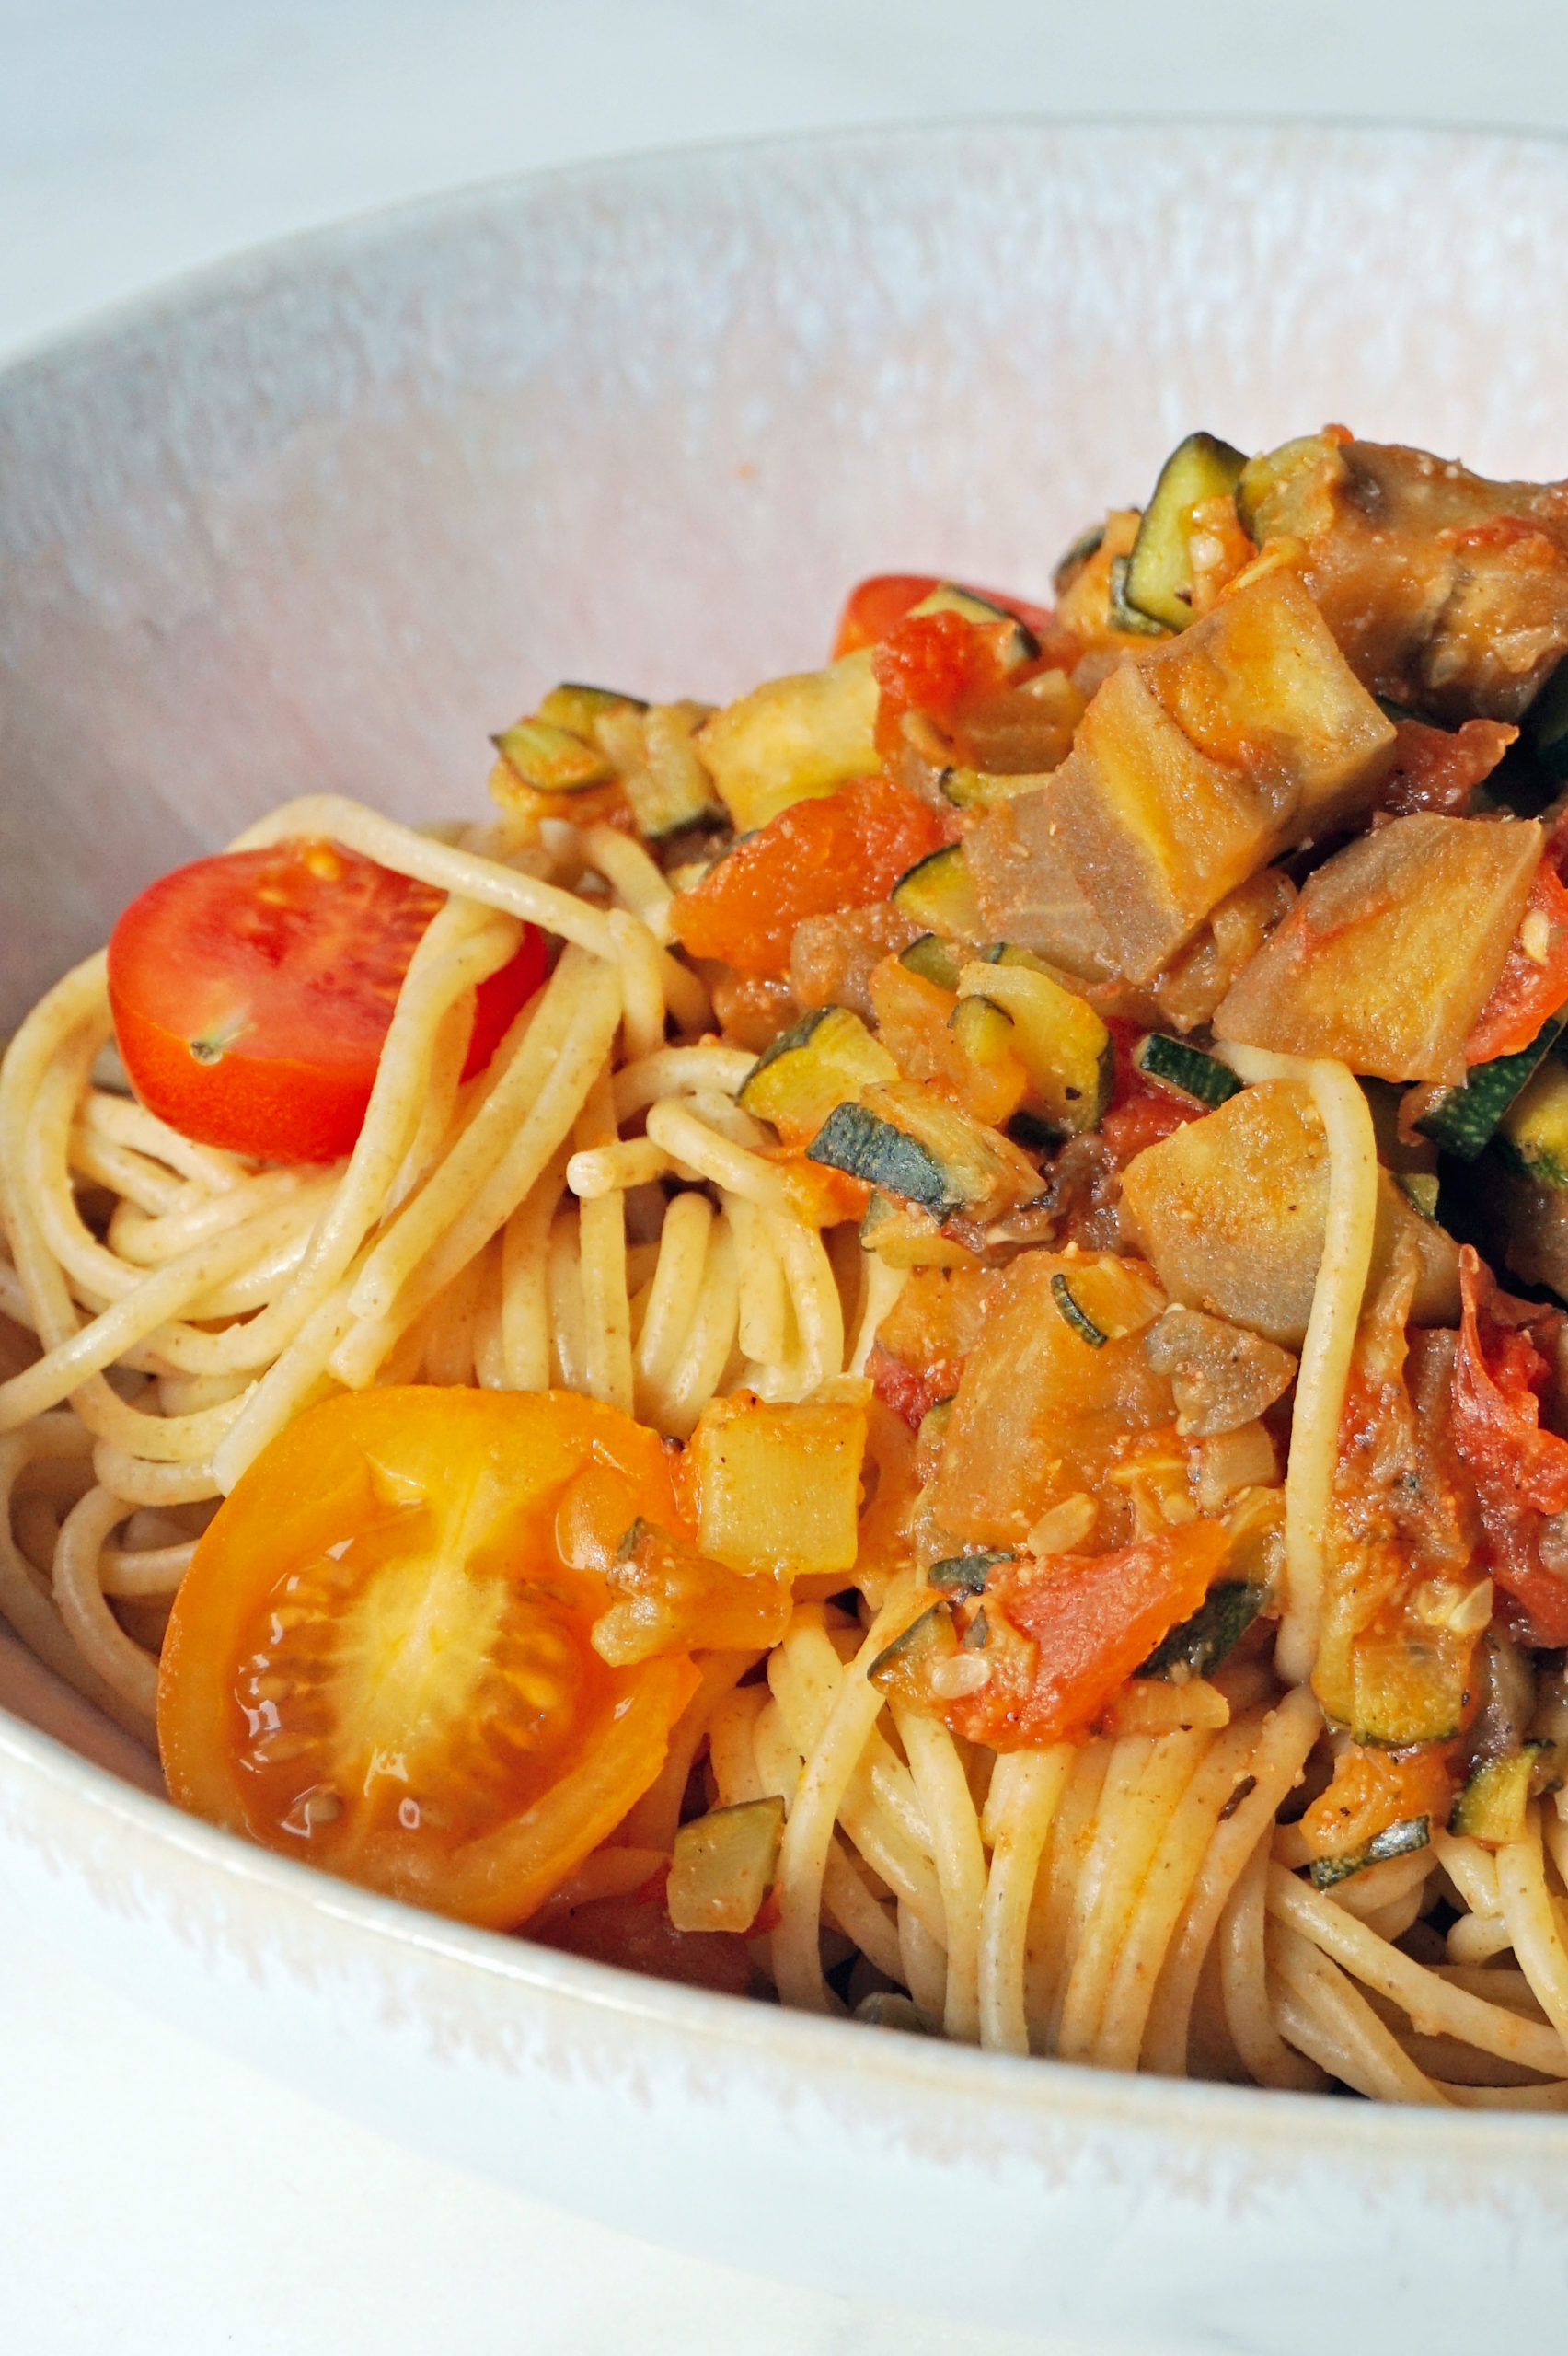 veggie pasta recipe